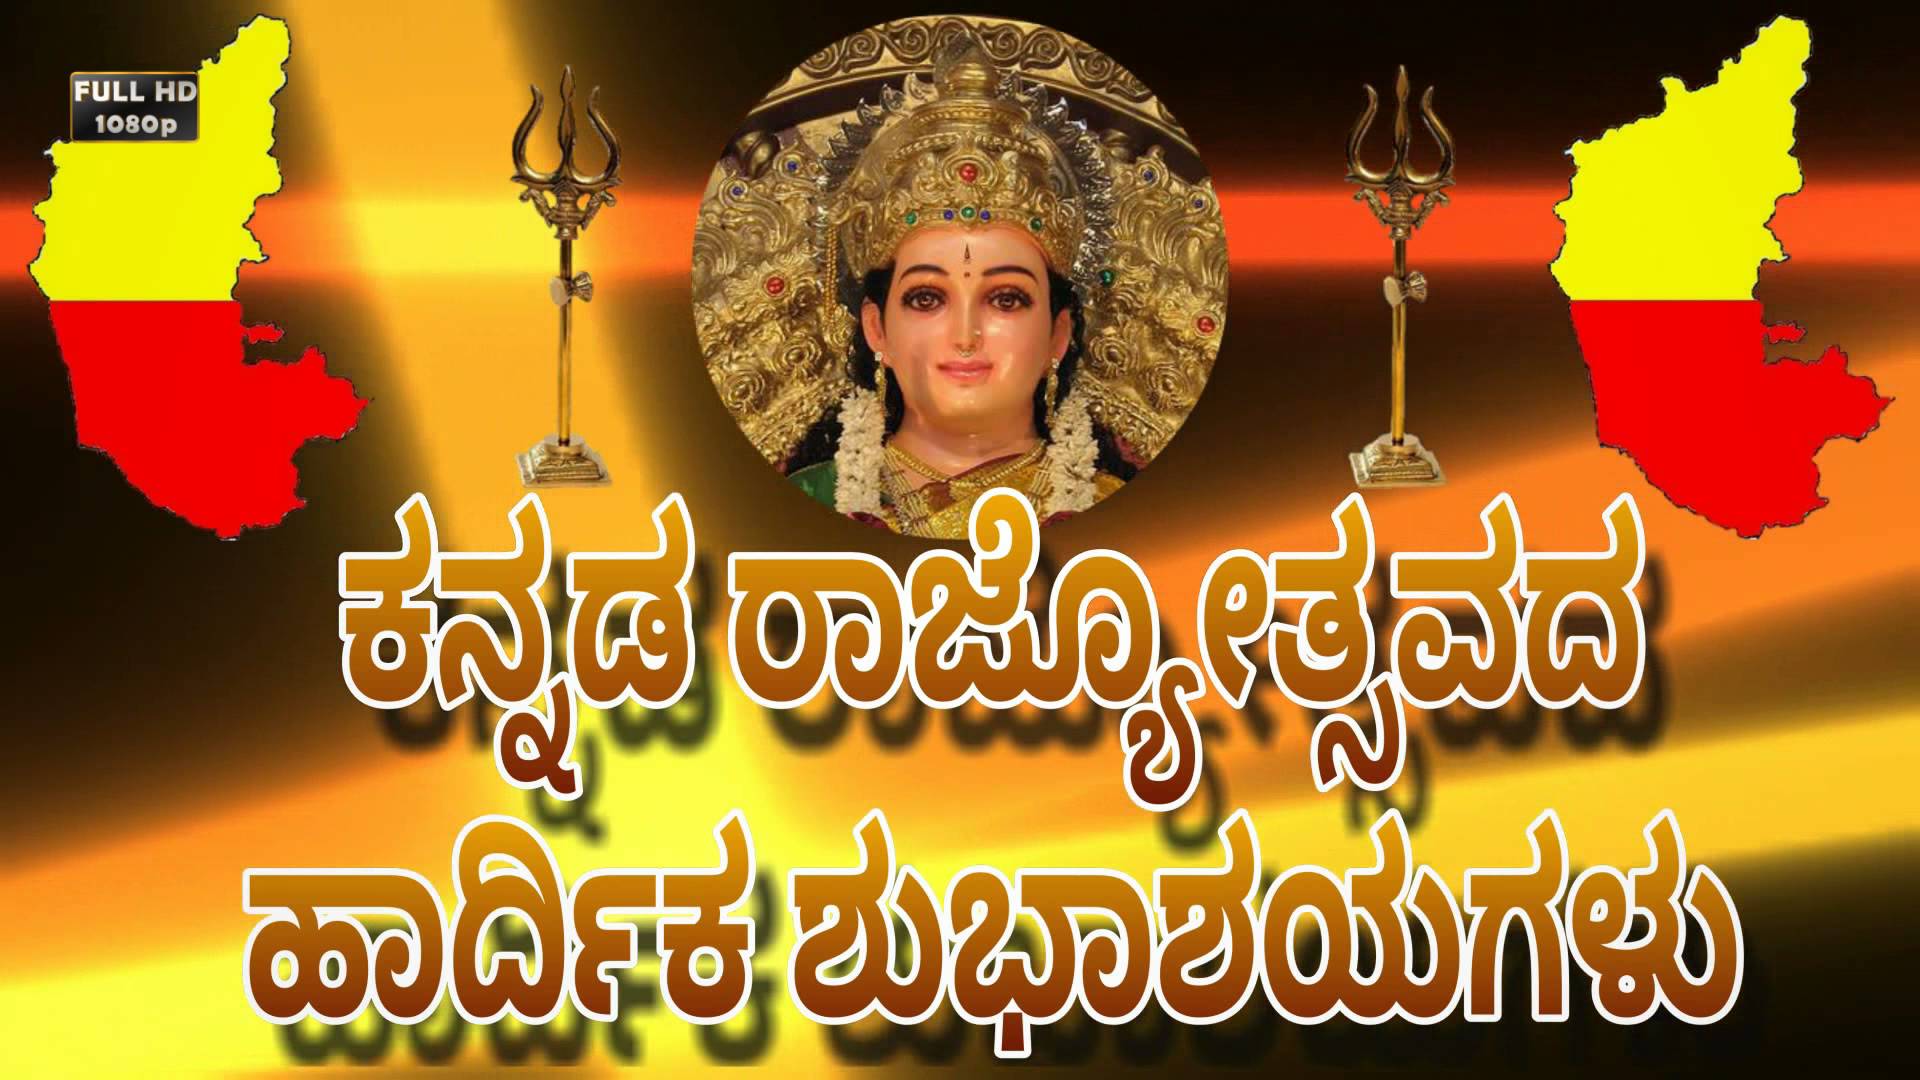 Kannada Rajyotsava Wishes, Messages, SMS, Quotes, Status, Shayari, Images | कन्नड़ राज्योत्सव 2019 की शुभकामनाएं संदेश, मैसेज, कोट्स, इमेज